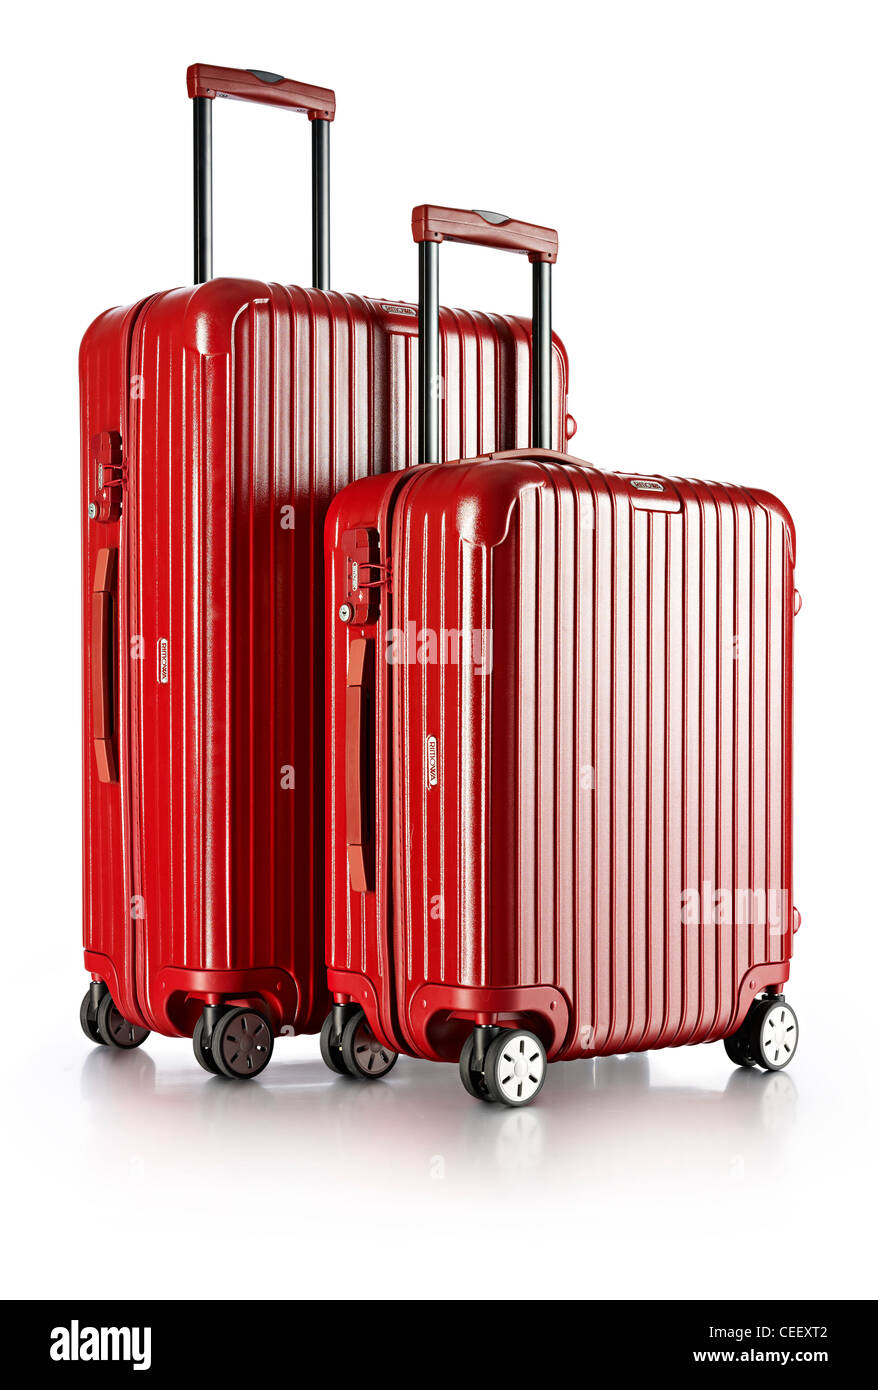 le valigie da viaggio rosso brillante tagliano le vacanze di viaggio Foto Stock